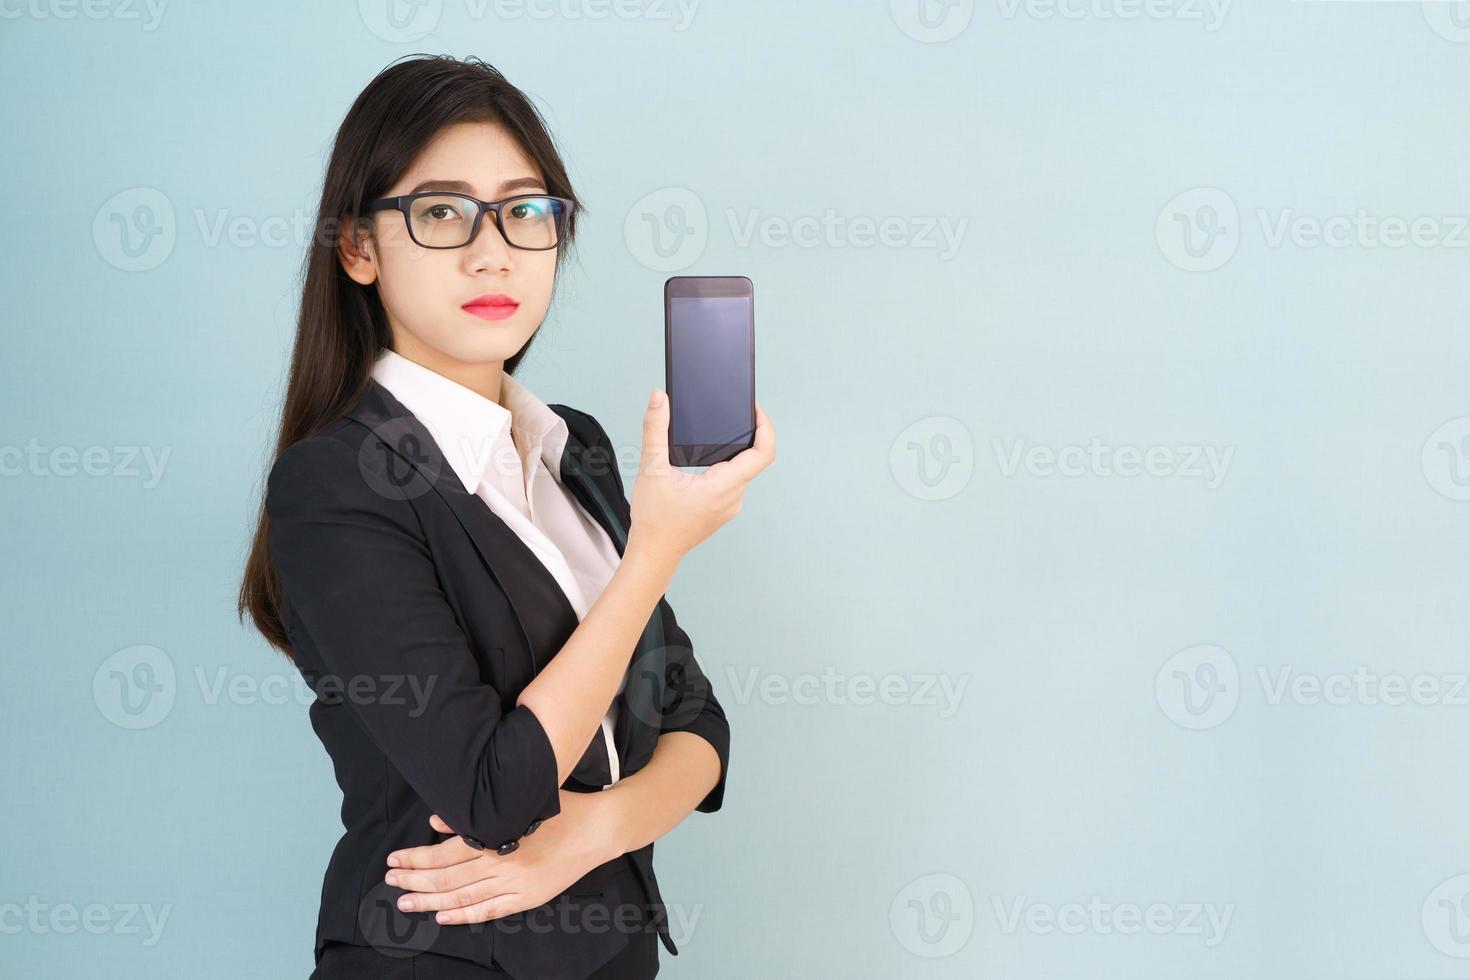 mulheres jovens de terno segurando seu smartphone foto